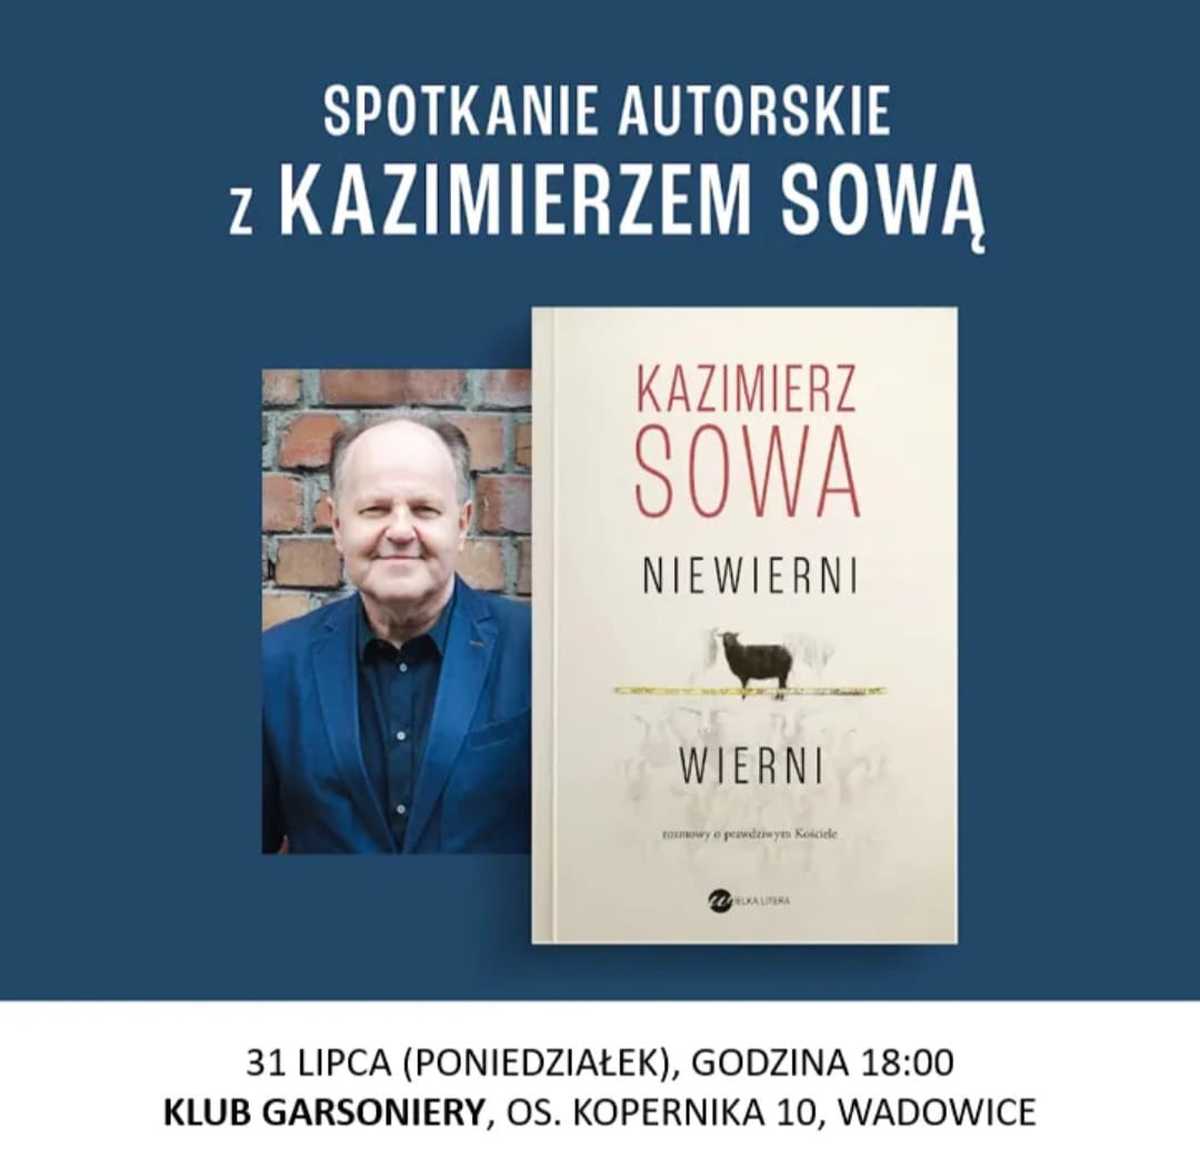 Spotkanie z ks. Kazimierzem Sową. Będzie promował książkę